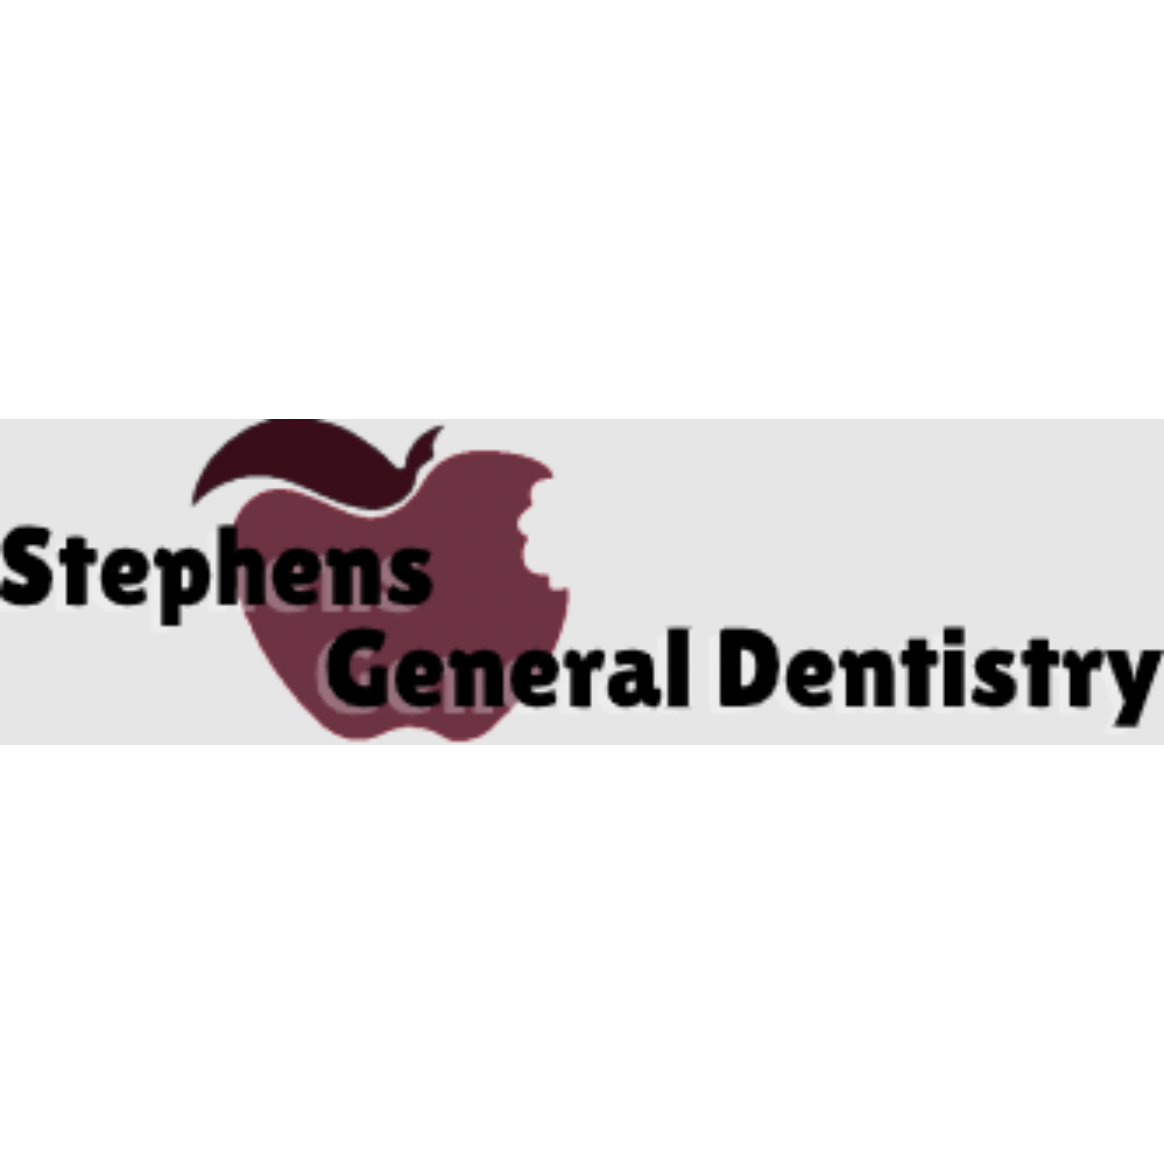 Stephens General Dentistry in Muskogee, OK